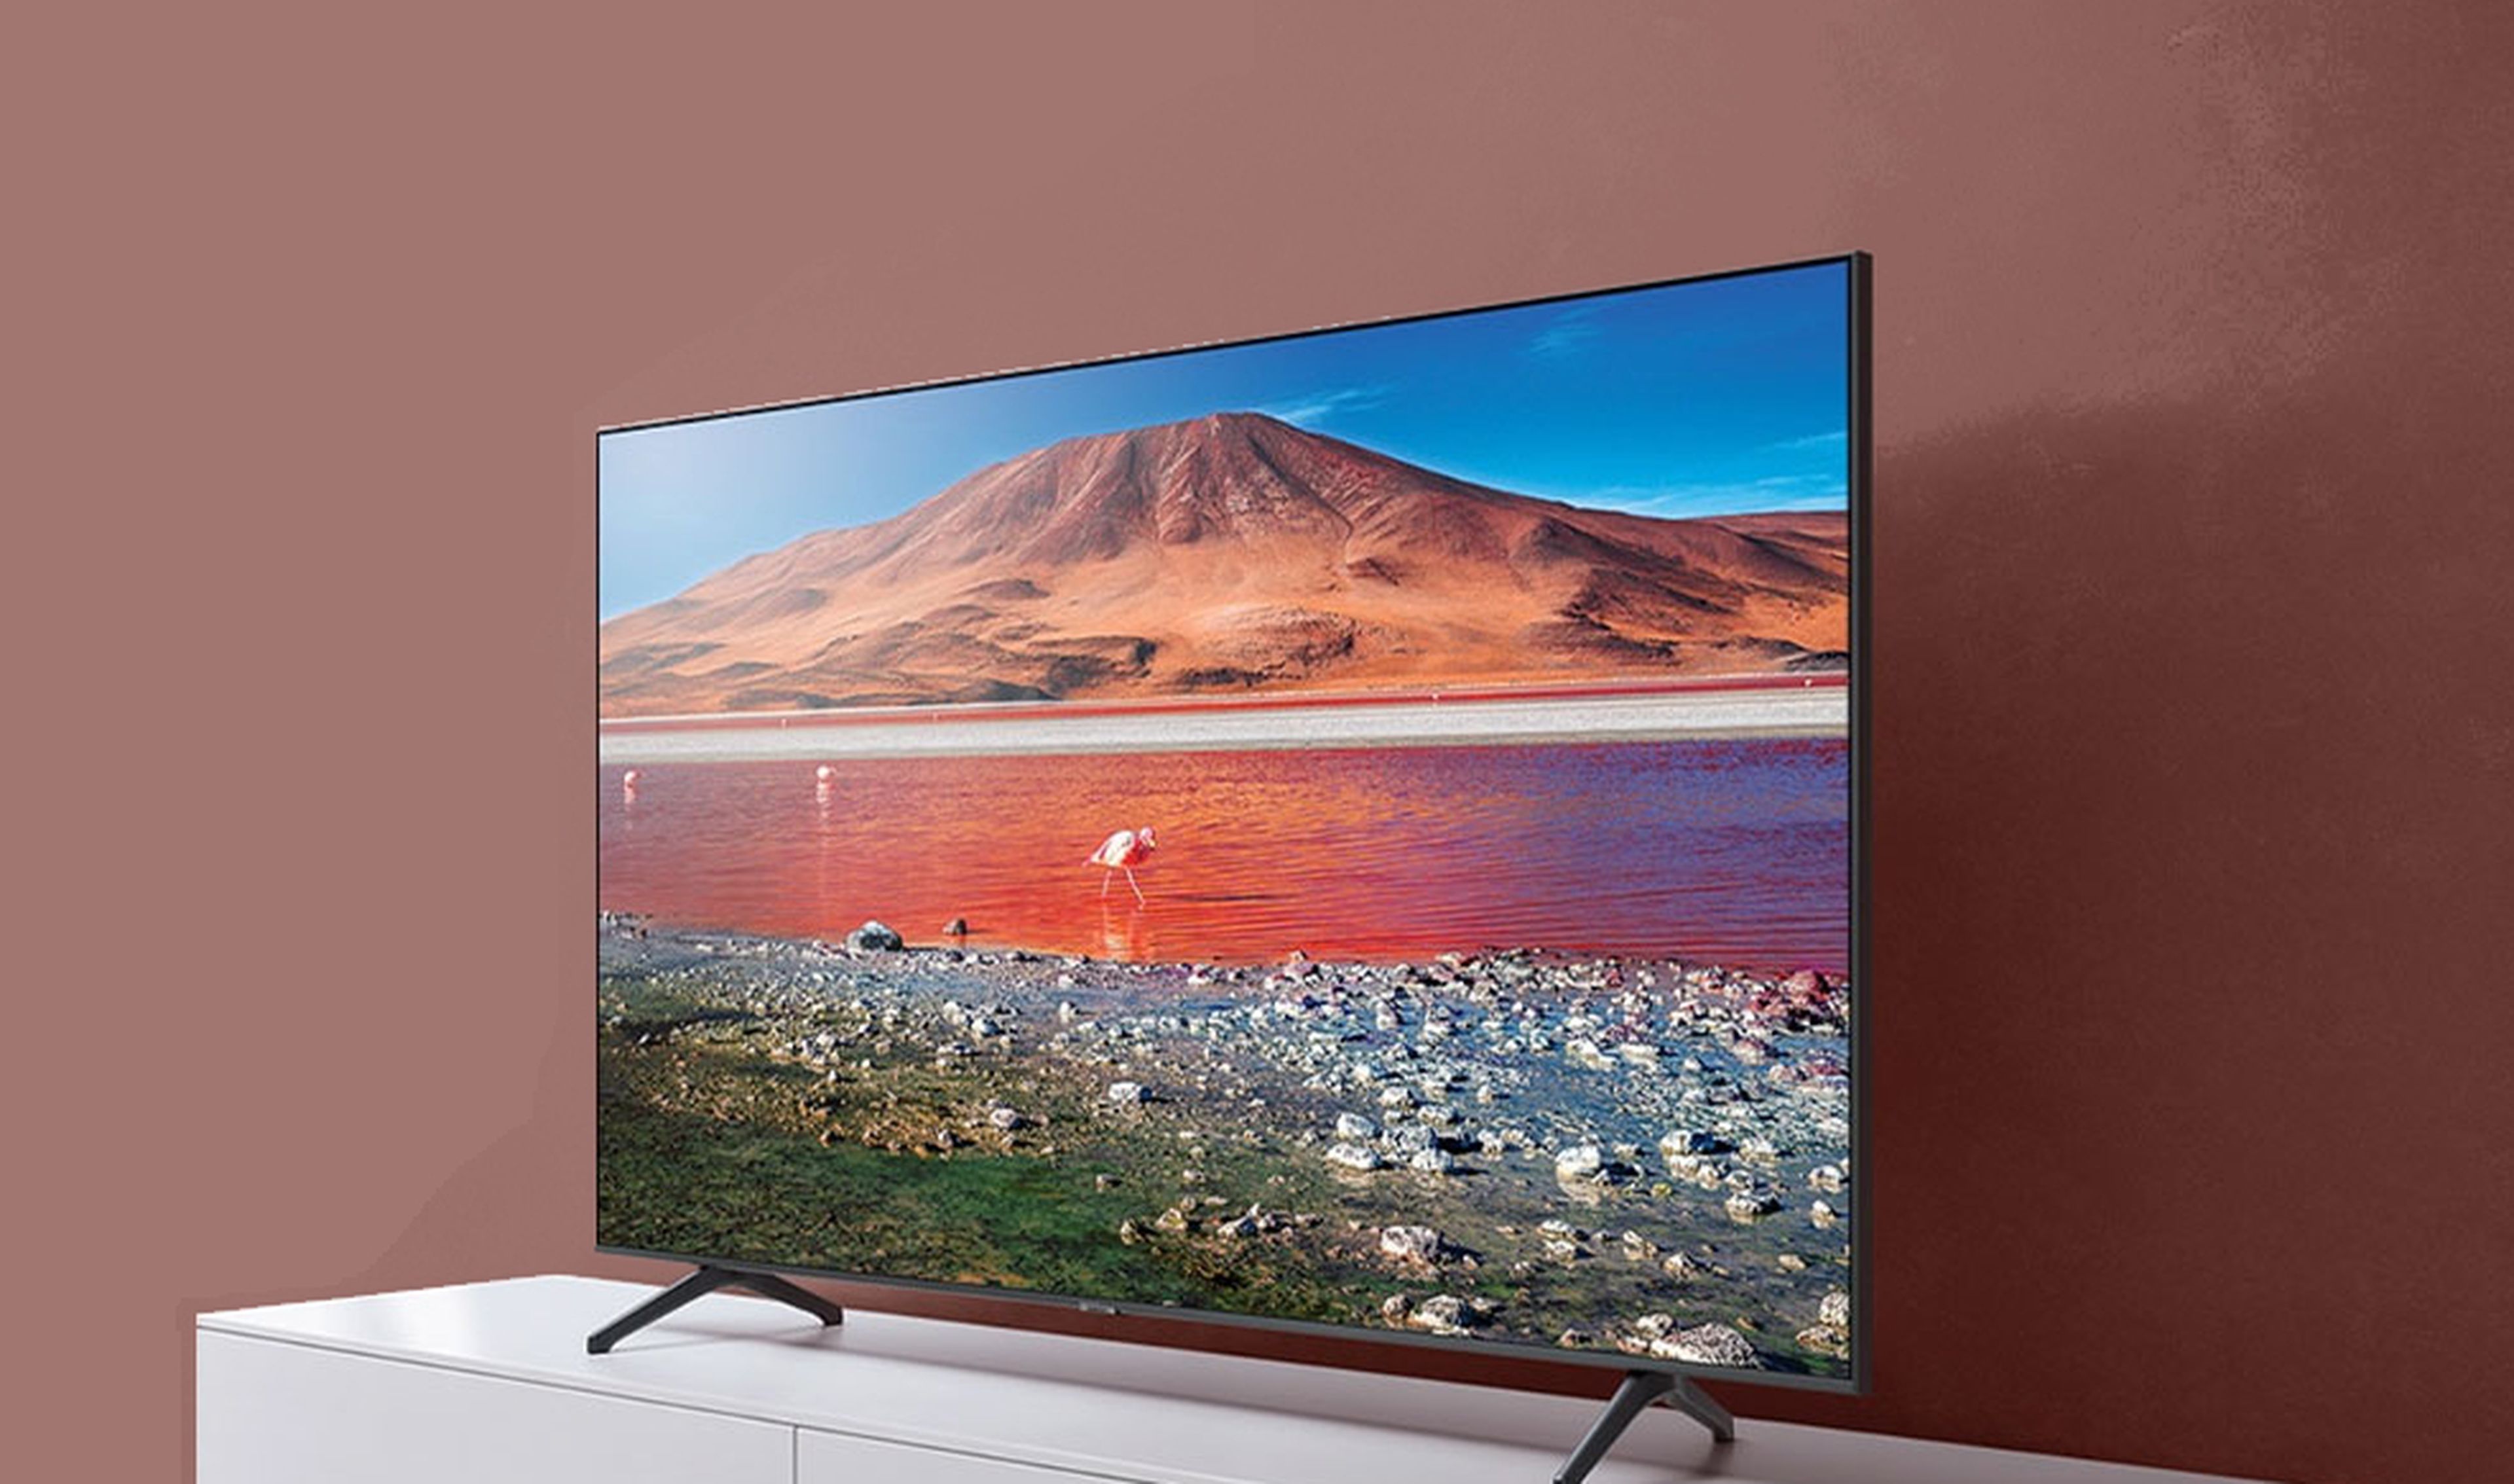 Más de 500 euros de rebaja en esta Smart TV Samsung de 65